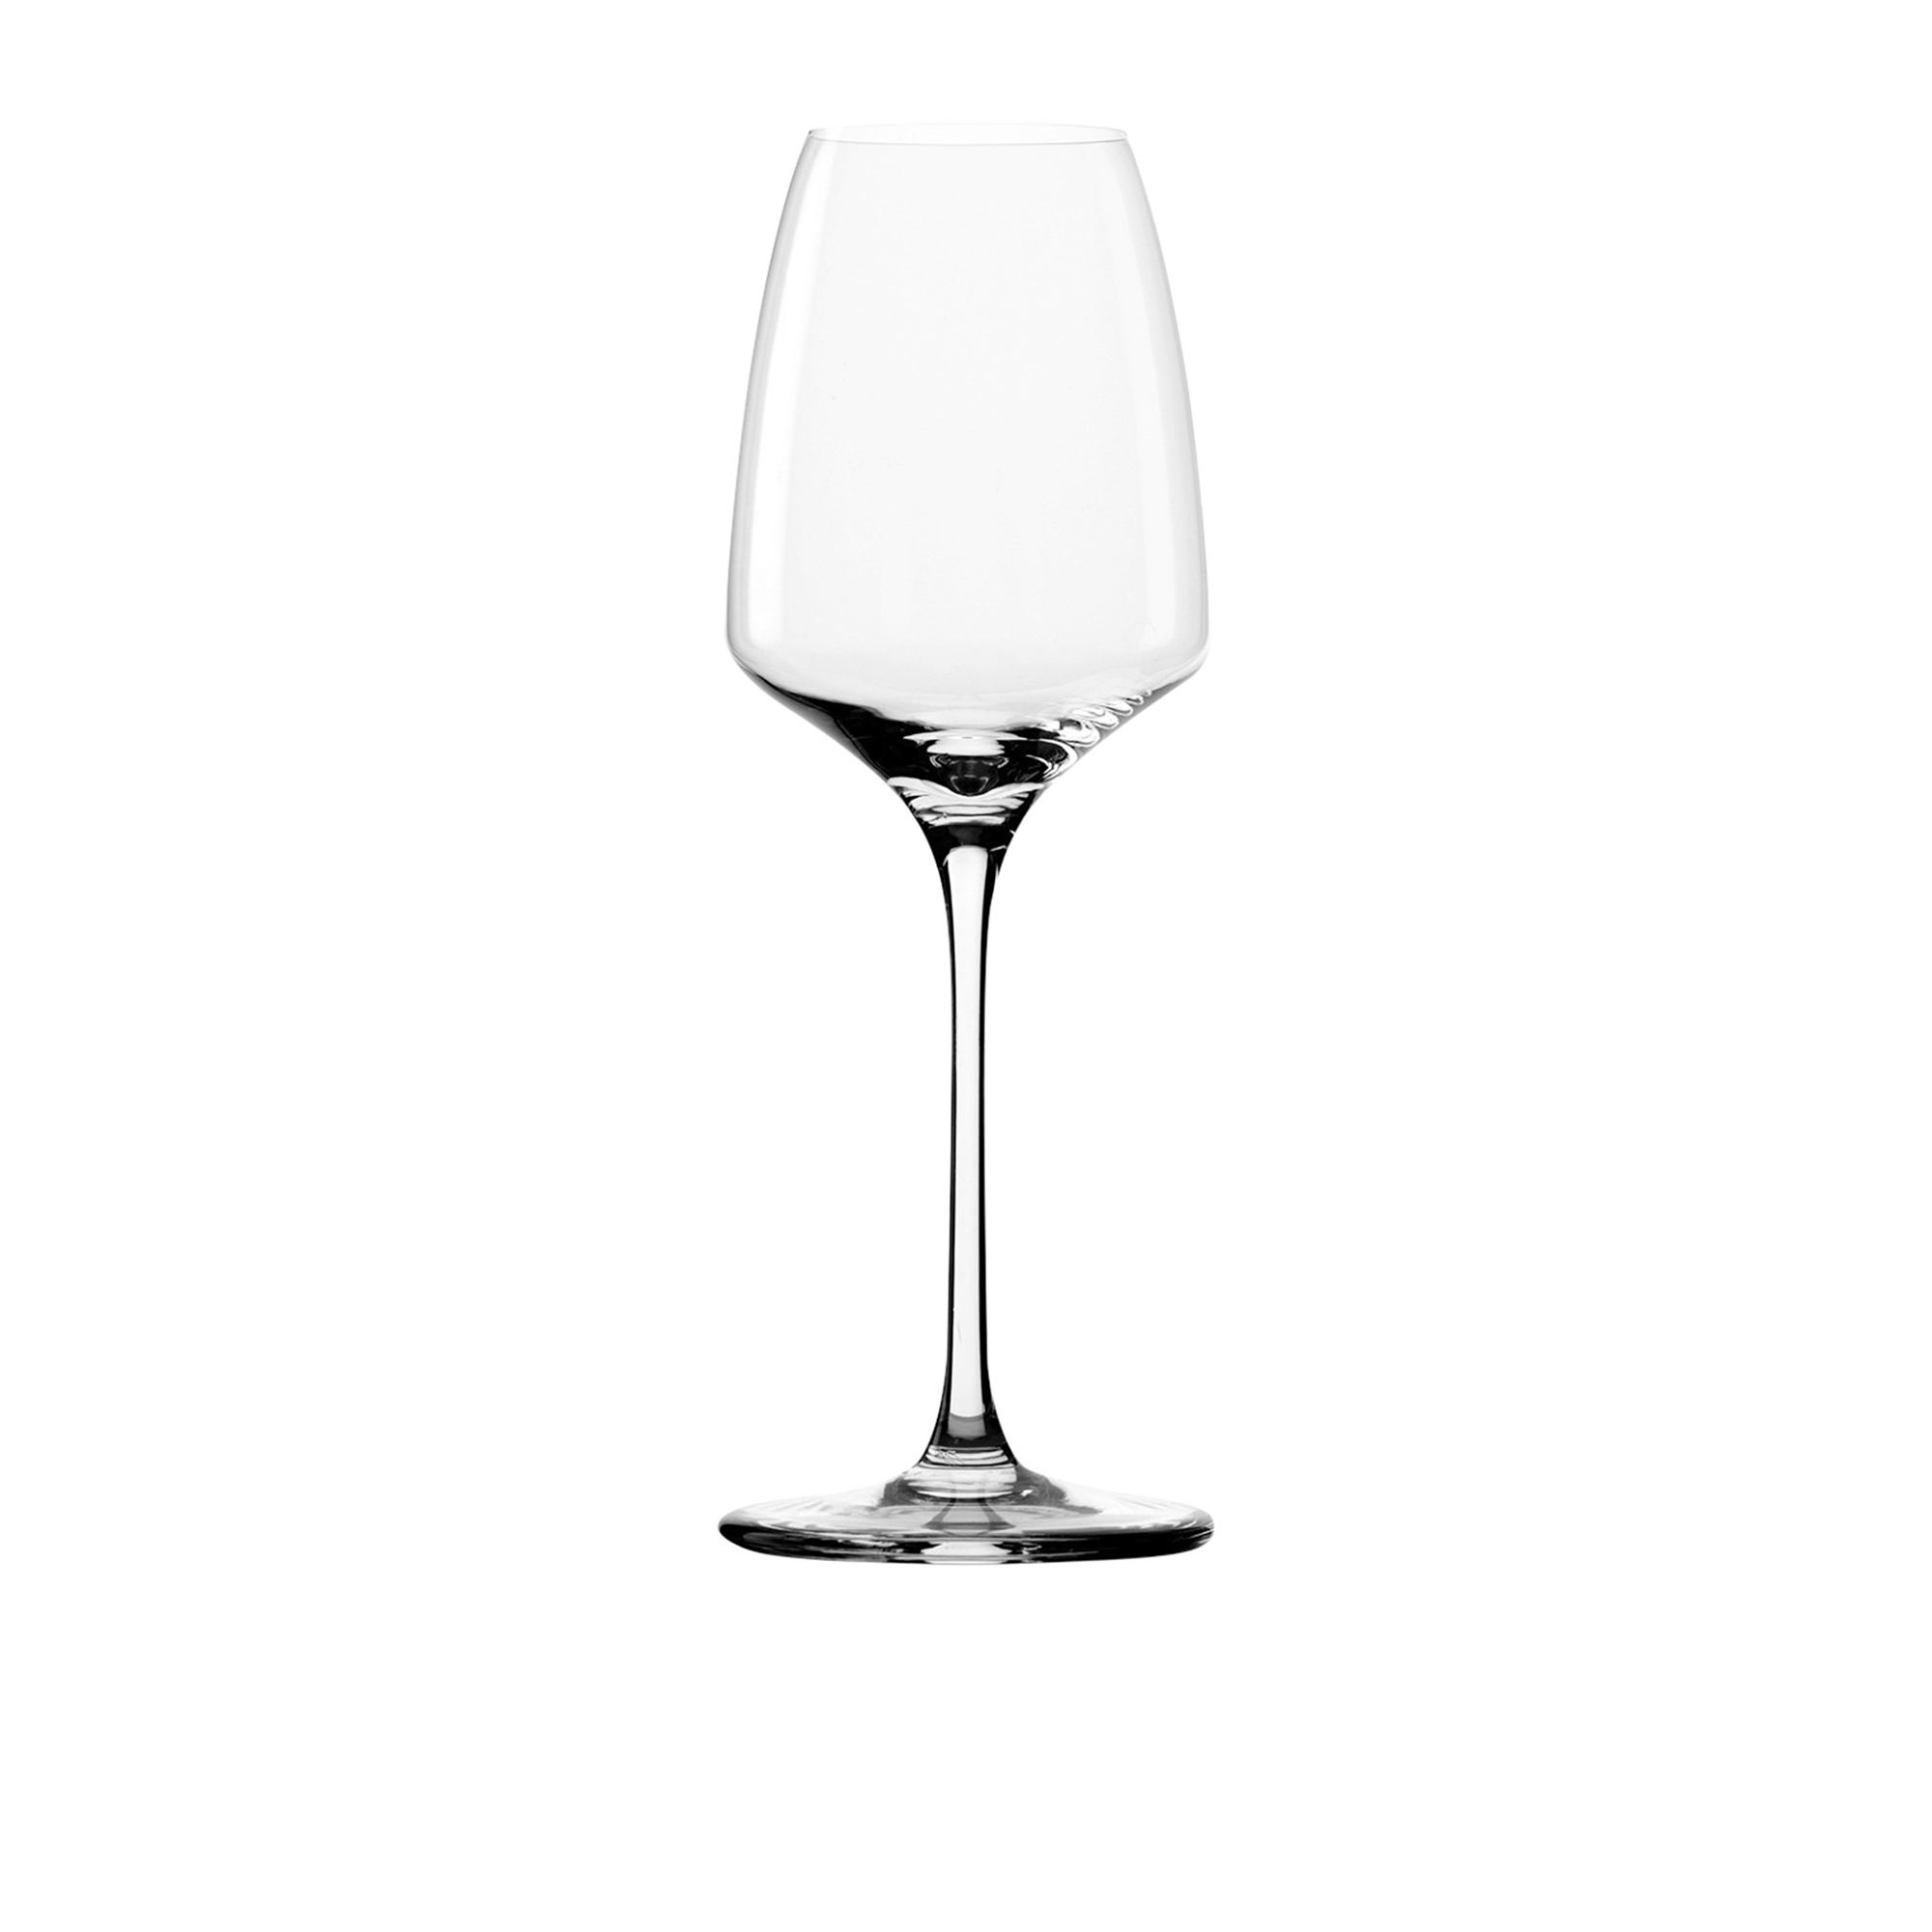 Stolzle Experience White Wine Glass 275ml Set of 6 Image 2